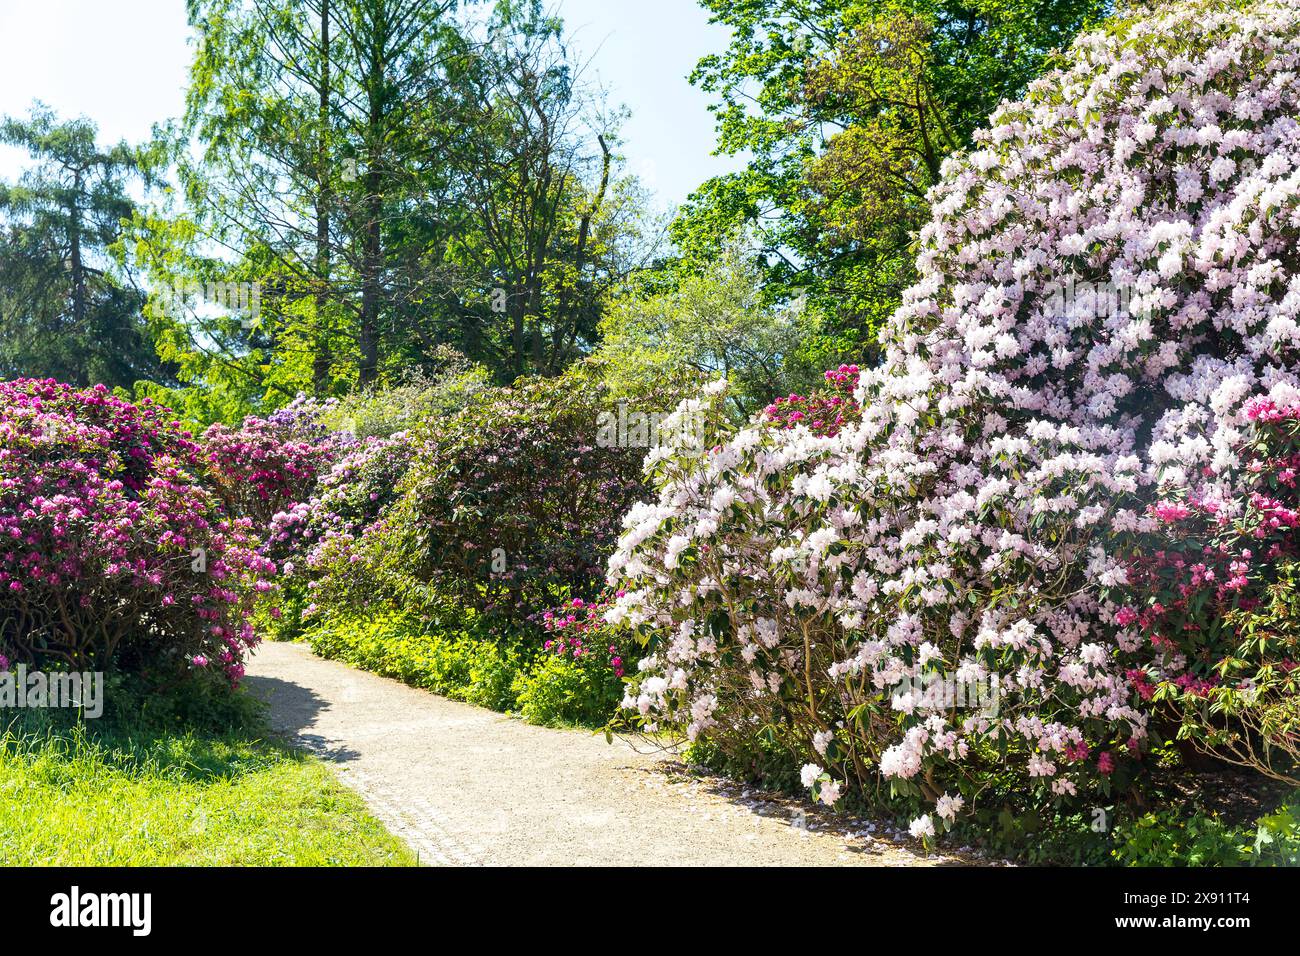 üppig und vielfarbig blühen die großen Sträucher vom Rhododendron im Rhododendronpark Wachwitz, Dresda, Sachsen, Deutschland *** The large rhododendr Foto Stock